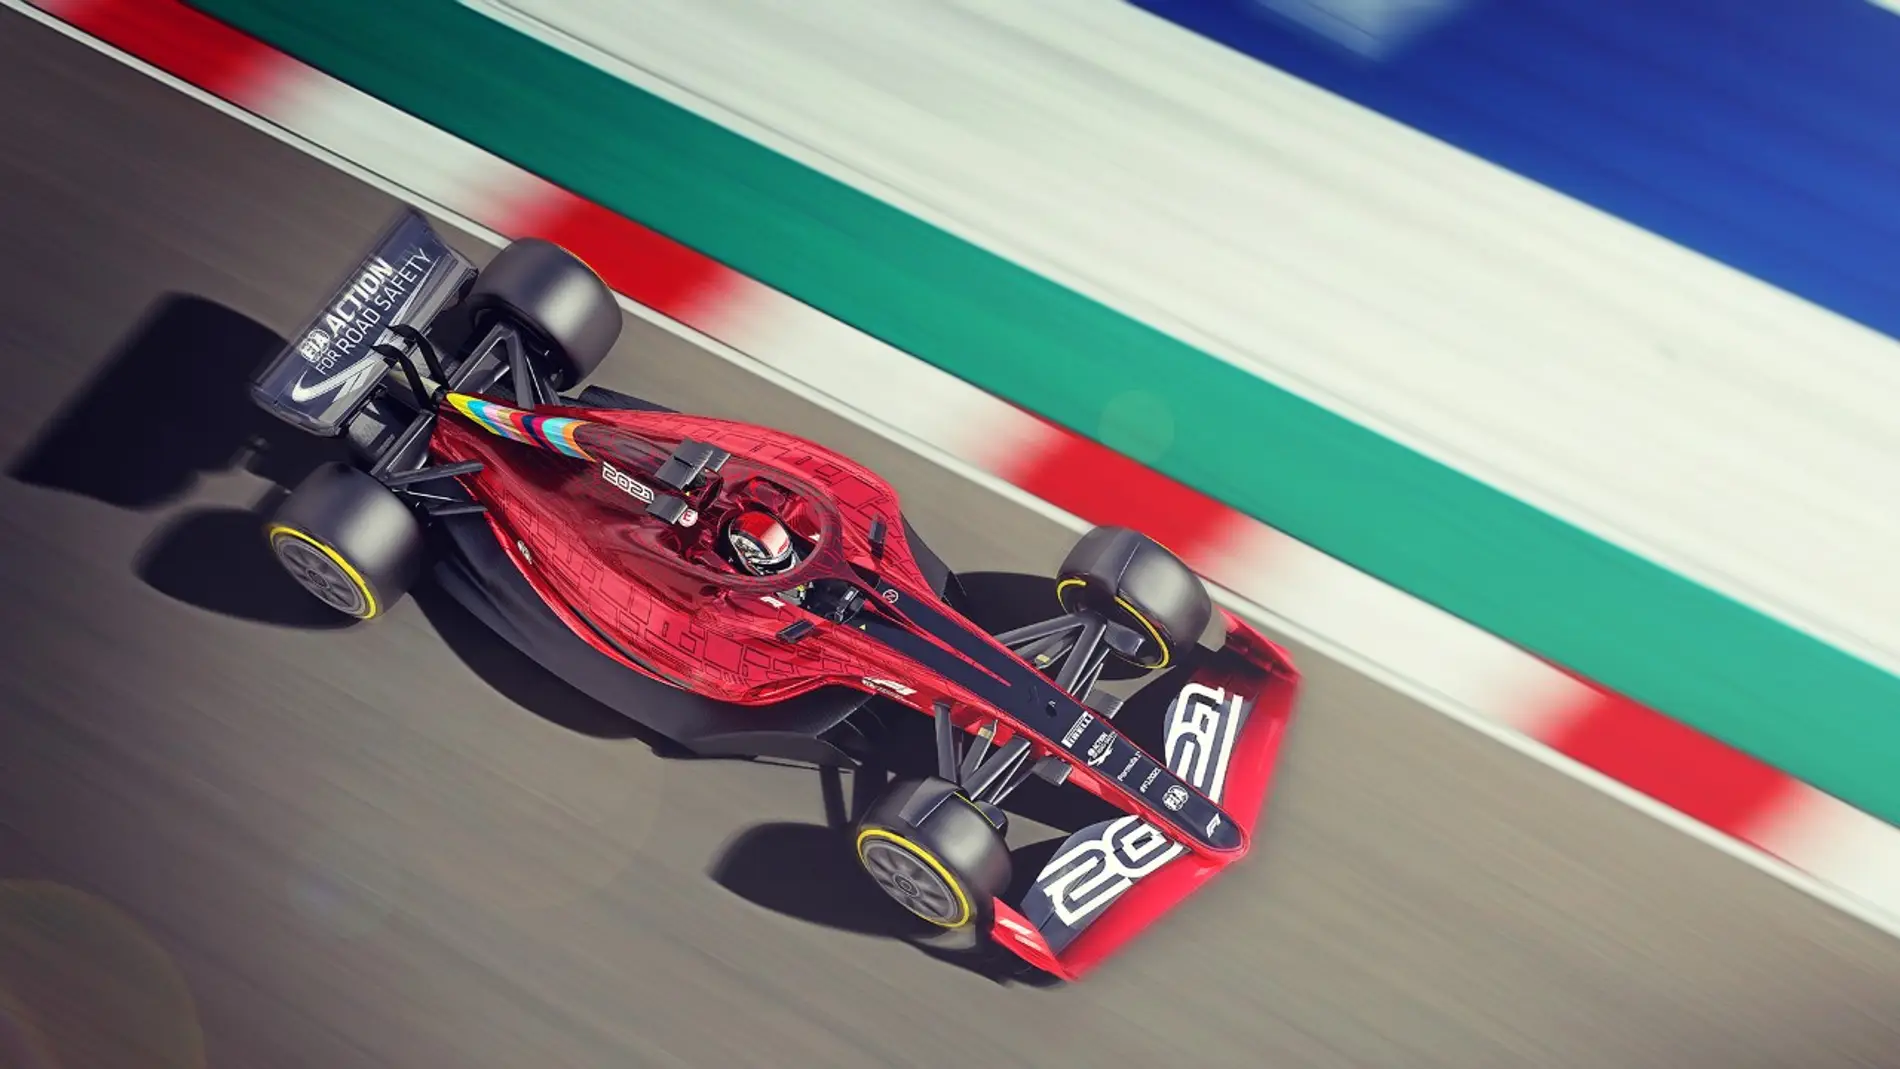  La Fórmula 1 descarta la tecnología 100% eléctrica para sus monoplazas a corto plazo